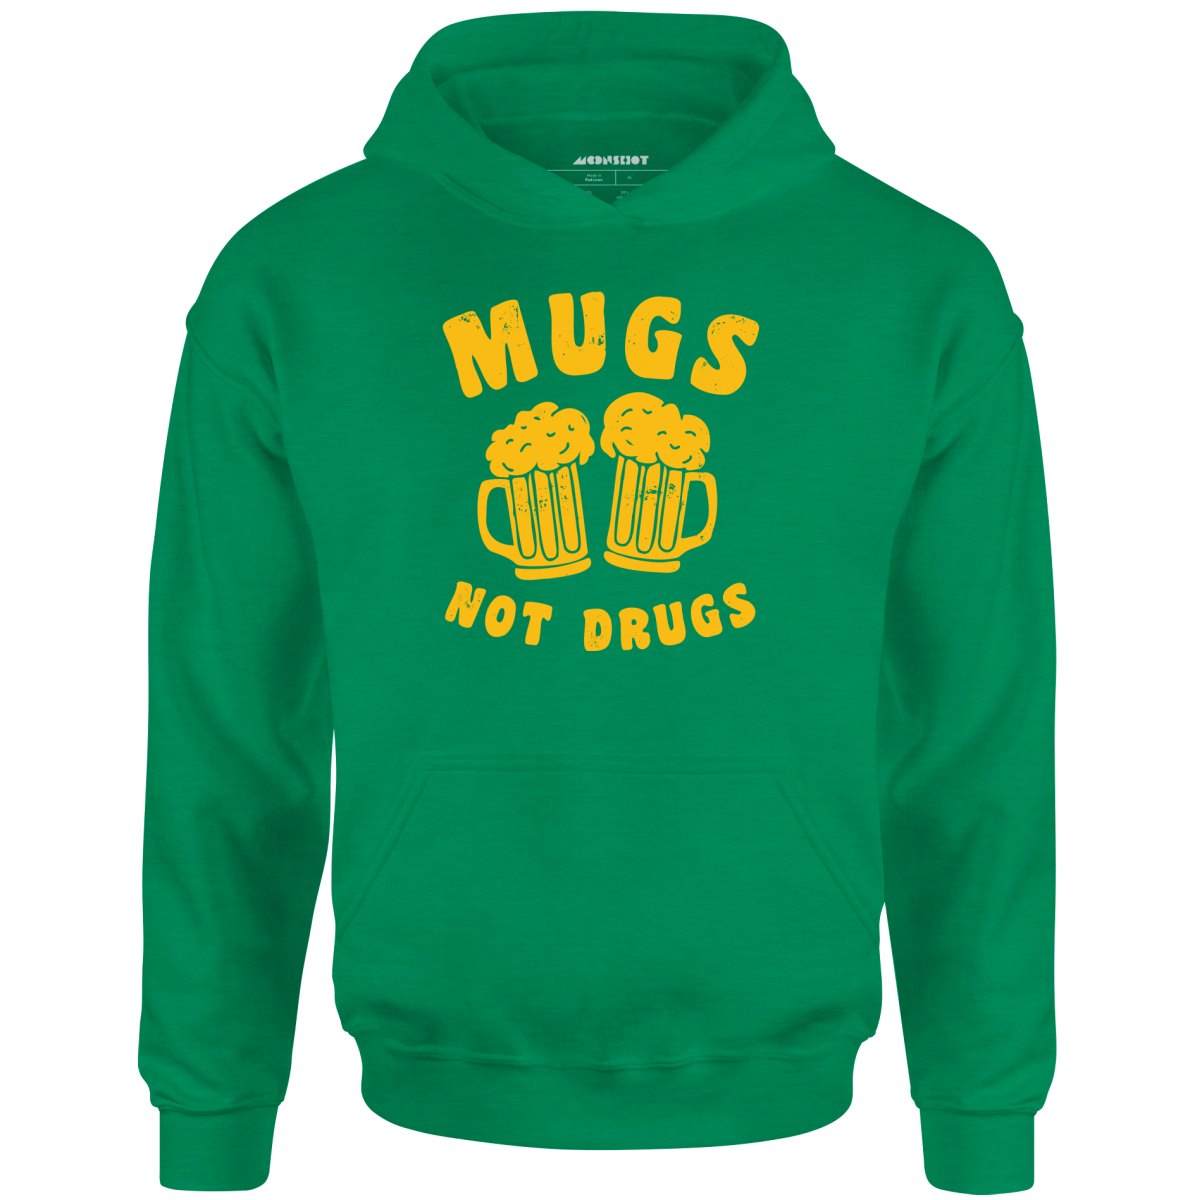 Mugs Not Drugs - Unisex Hoodie